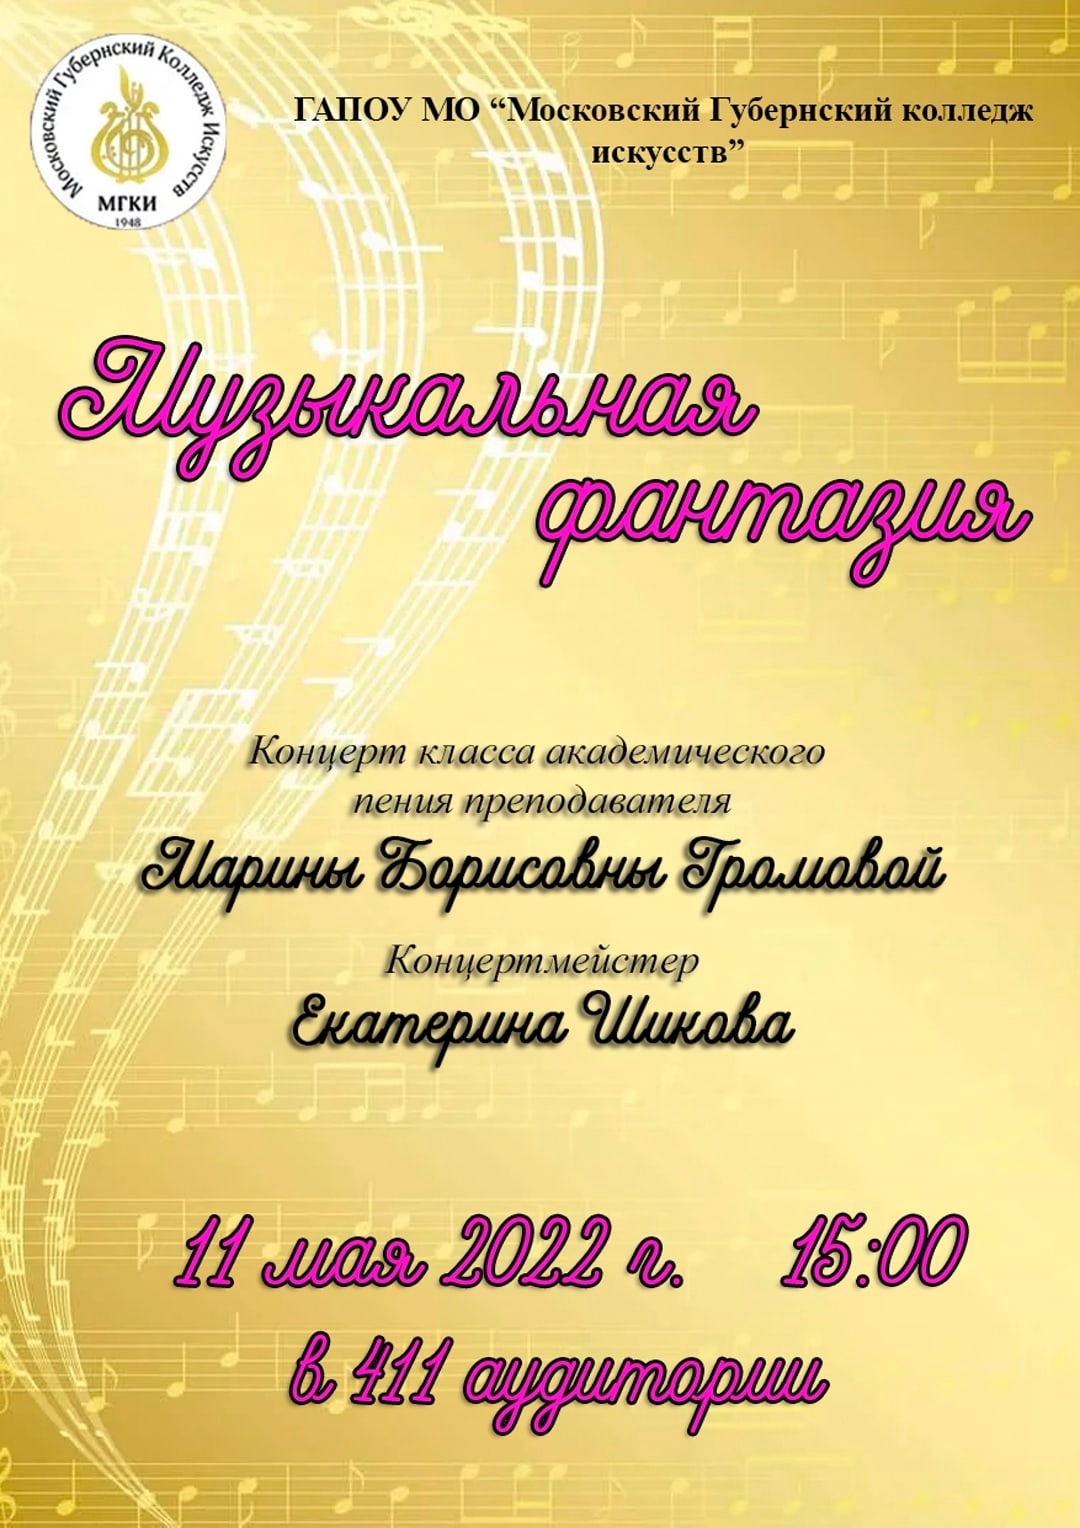 Уважаемые подписчики, приглашаем Вас на концерт студентов класса преподавателя отдела "Вокальное искусство" Громовой Марины Борисовны